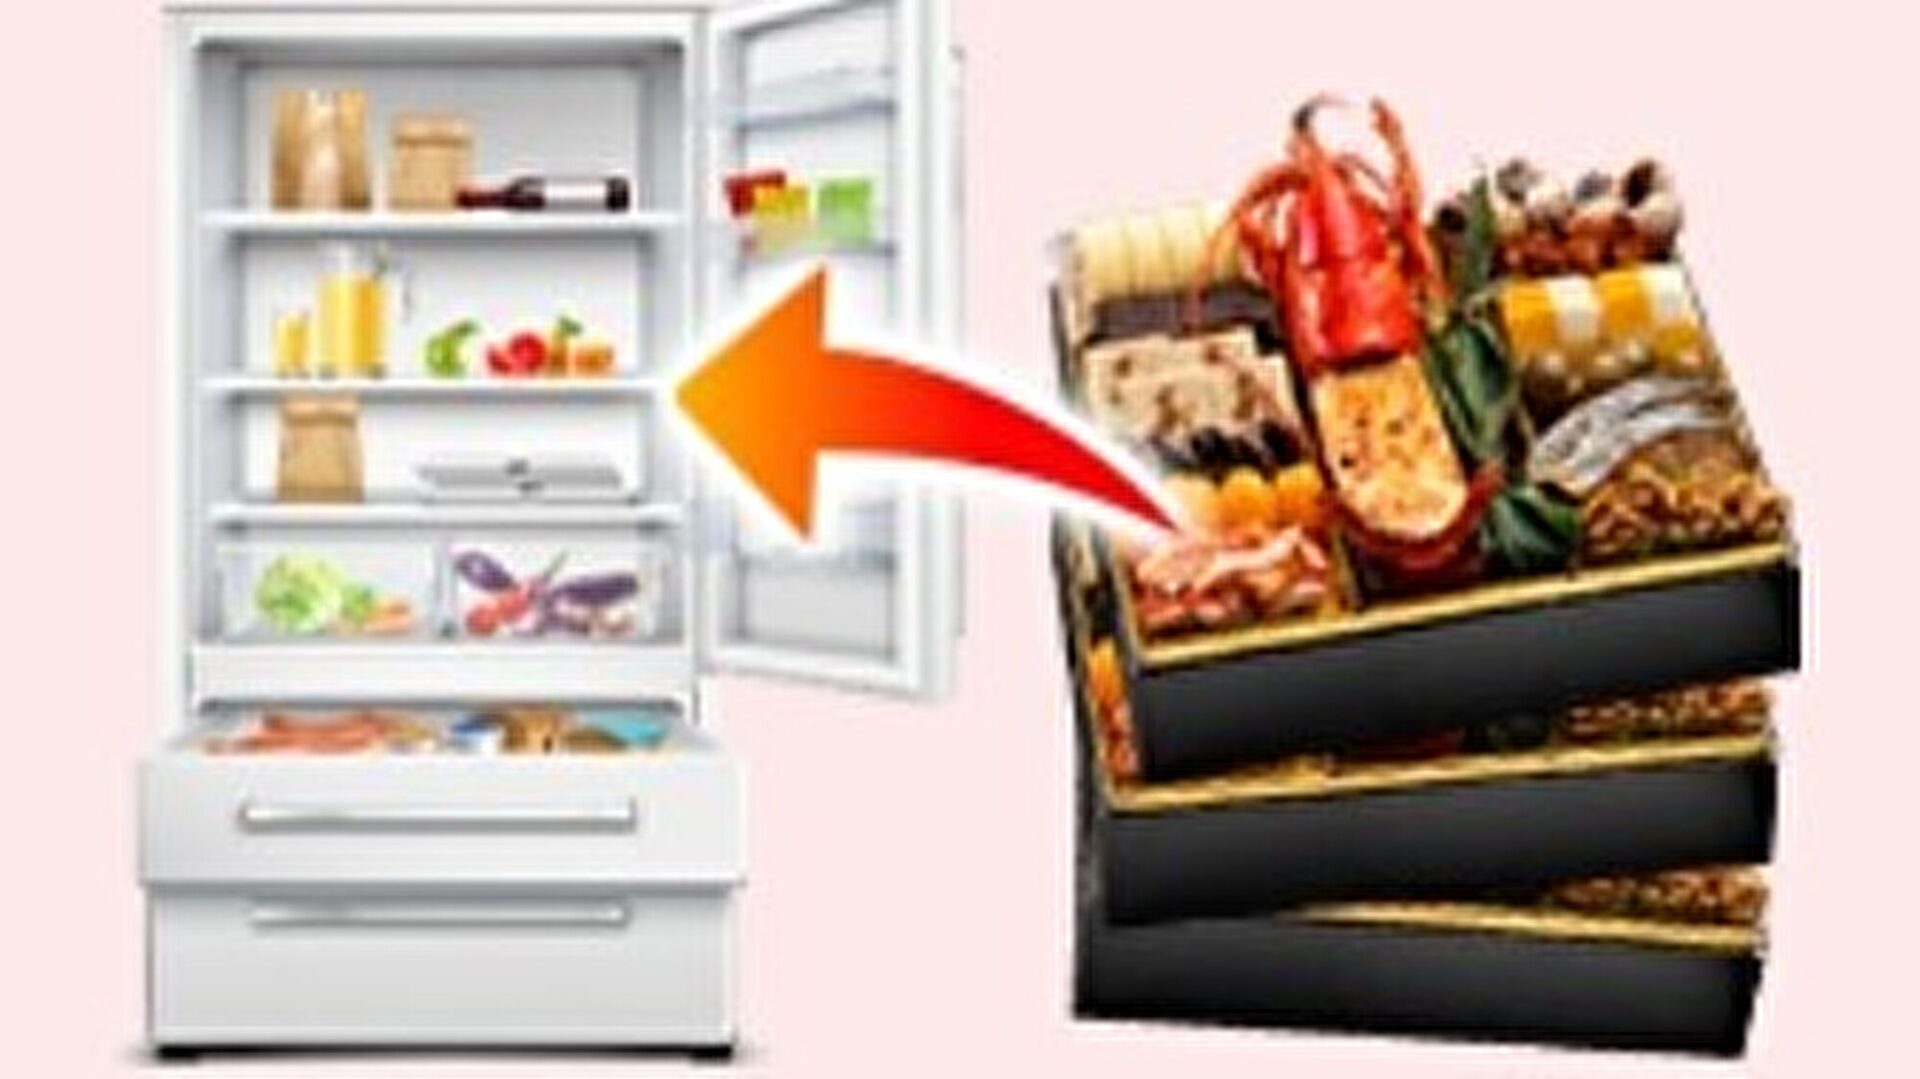 均等に解凍する場合は1段ずつラップに包んで冷蔵庫に入れた方が良いです。 重箱のまま入らない場合もオススメ。